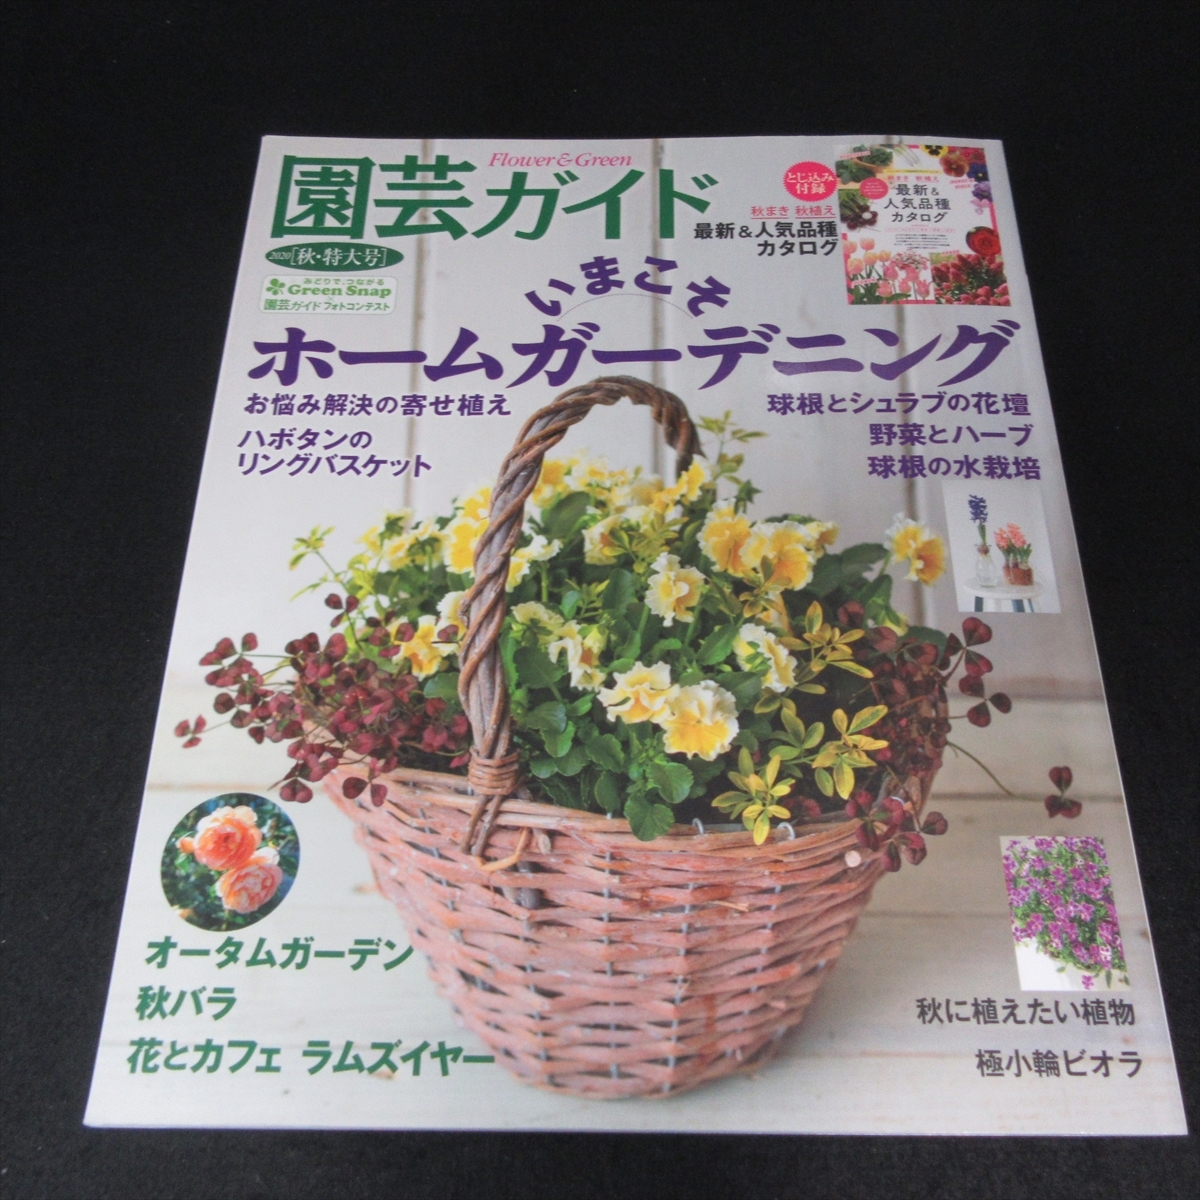  дополнение есть журнал [ садоводство гид 2020 год осень * очень большой номер ] # отправка 170 иен специальный выпуск :.... Home садоводство / более .... осень роза др. *